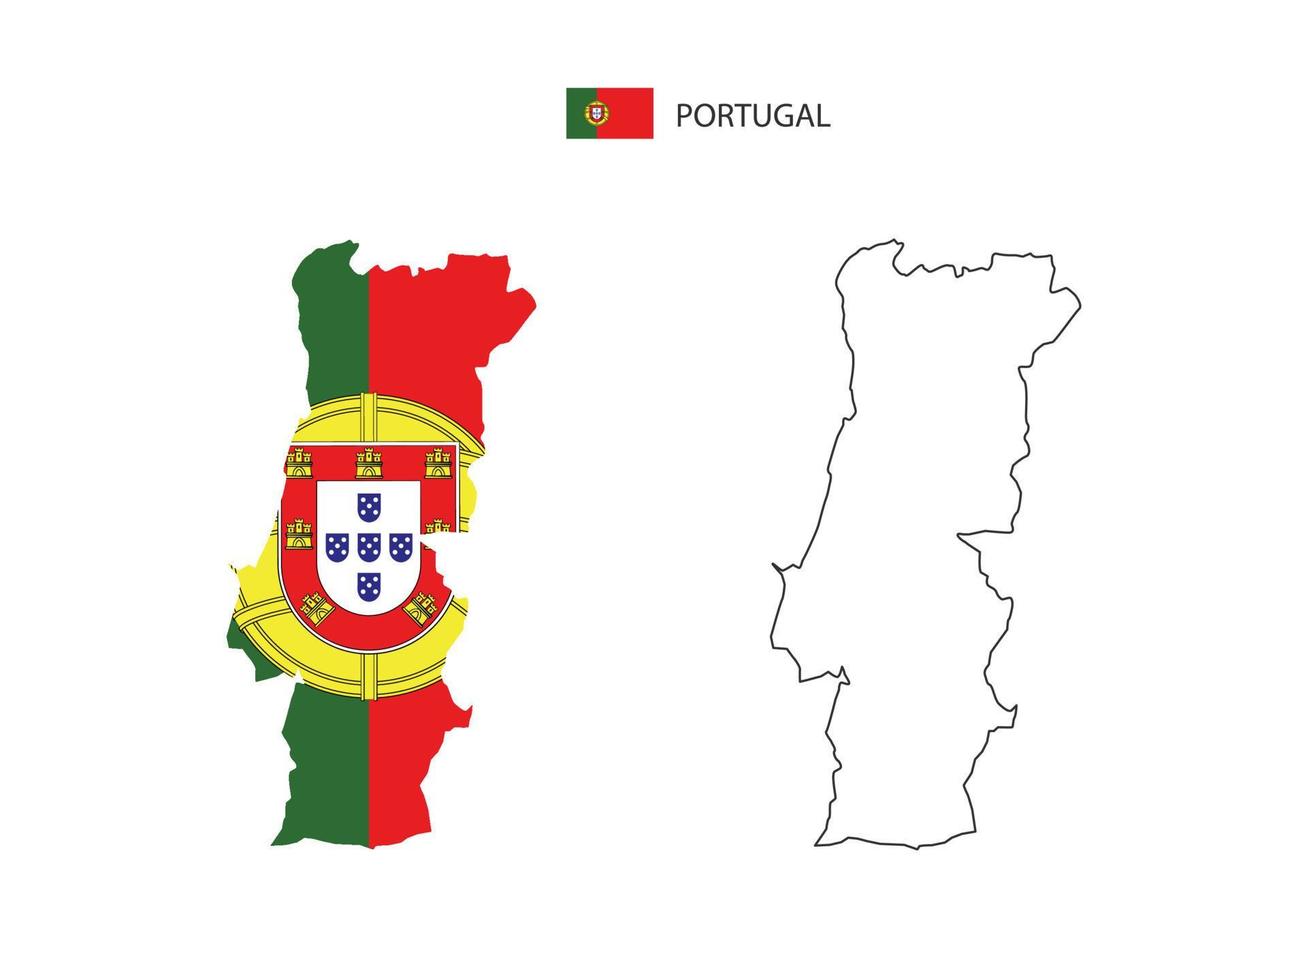 vetor da cidade do mapa de portugal dividido pelo estilo de simplicidade do esboço. tem 2 versões, versão de linha fina preta e cor da versão da bandeira do país. ambos os mapas estavam no fundo branco.